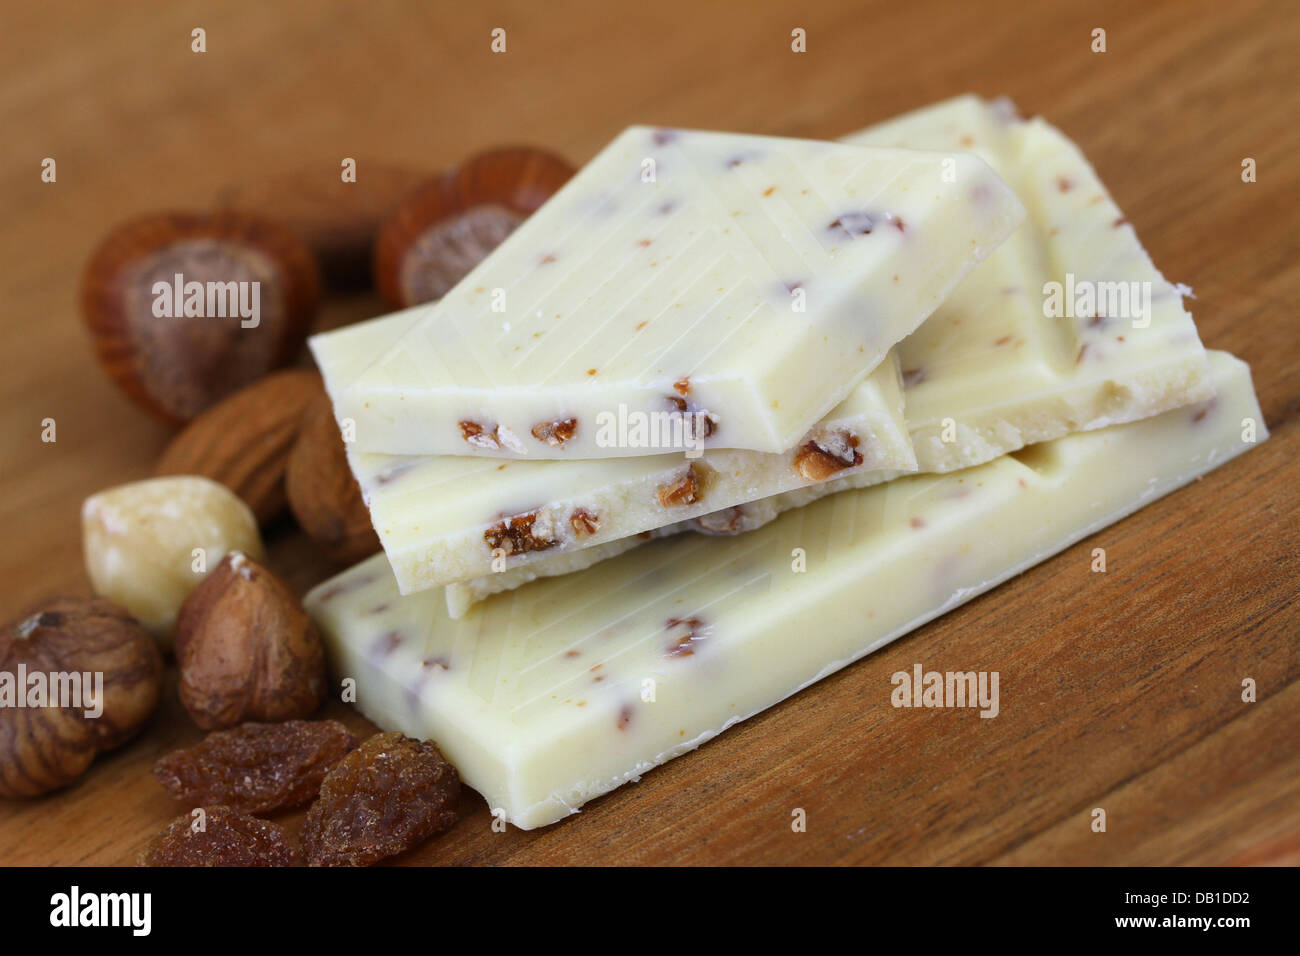 Chocolat blanc aux noisettes, amandes et raisins secs Banque D'Images